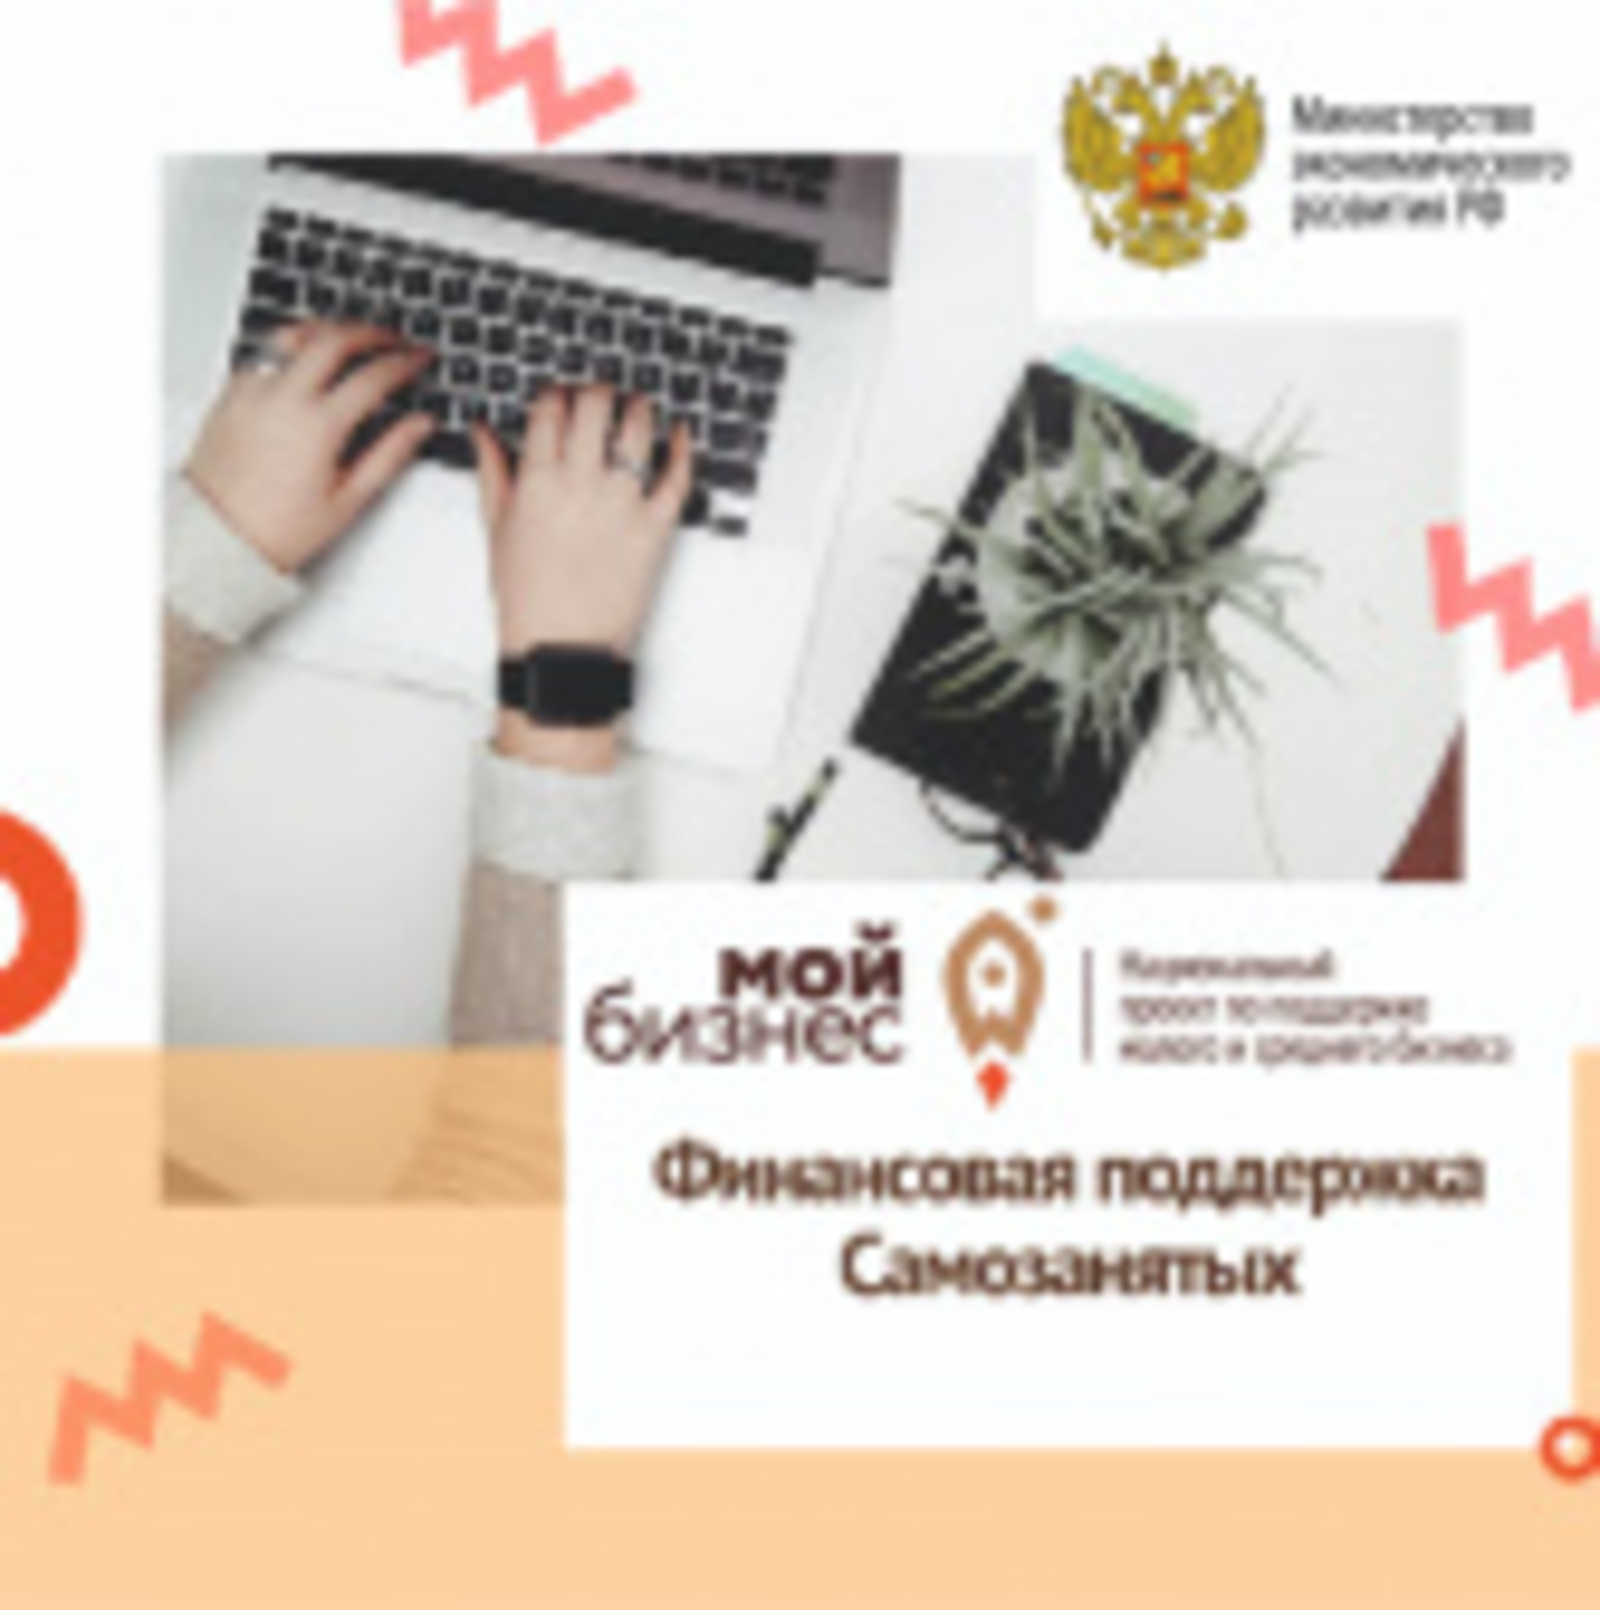 Башкирия названа в числе лучших регионов России по предоставлению микрокредитной поддержки самозанятым